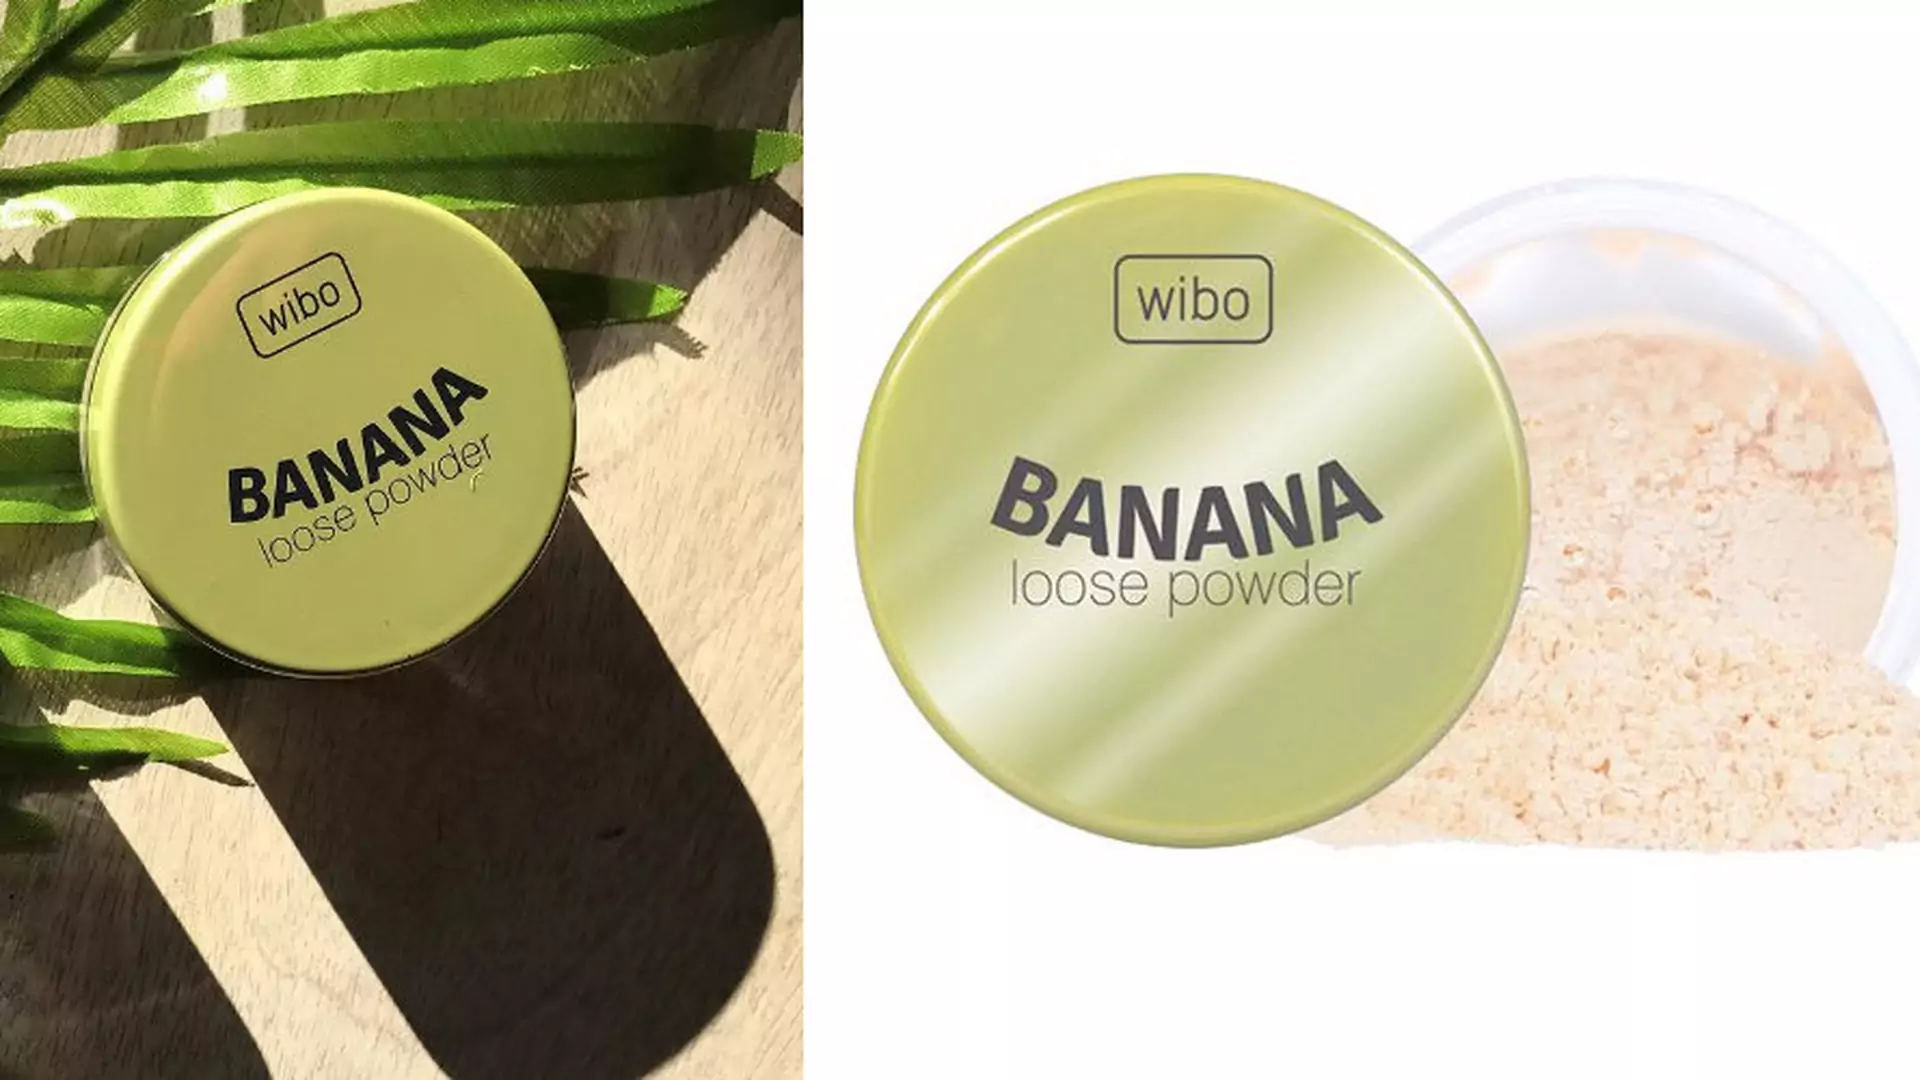 Żółty puder bananowy: kosmetyczny hit za 15 zł. Dlaczego dziewczyny kupują go jak szalone?